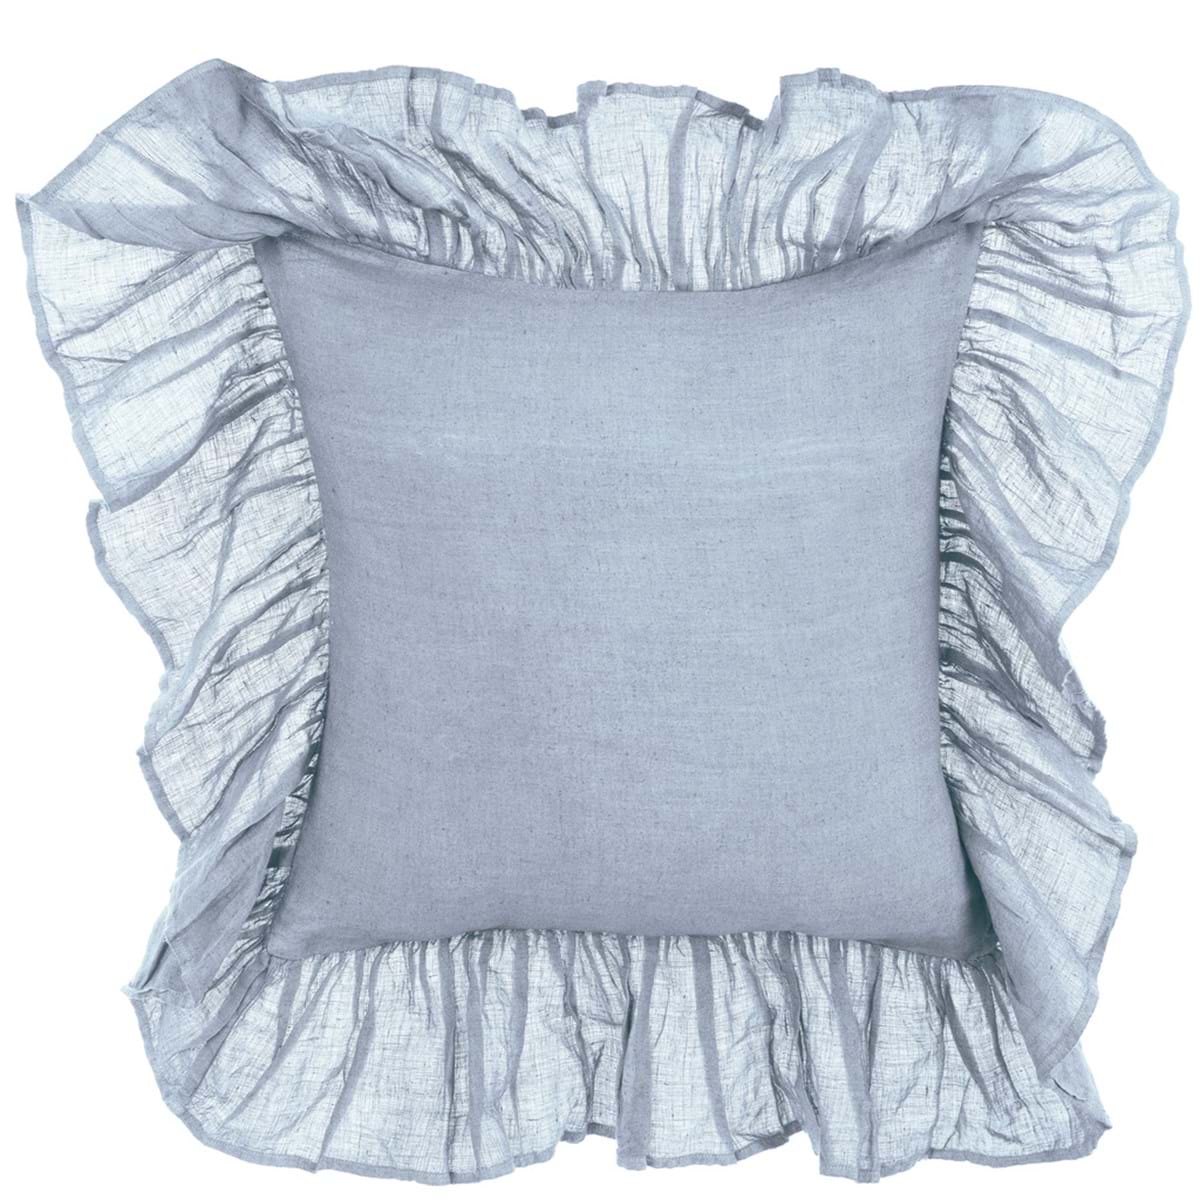 Cuscino arredo in lino azzurro con gale - 45x45 cm - Collezione Dentelle - Blanc Mariclo